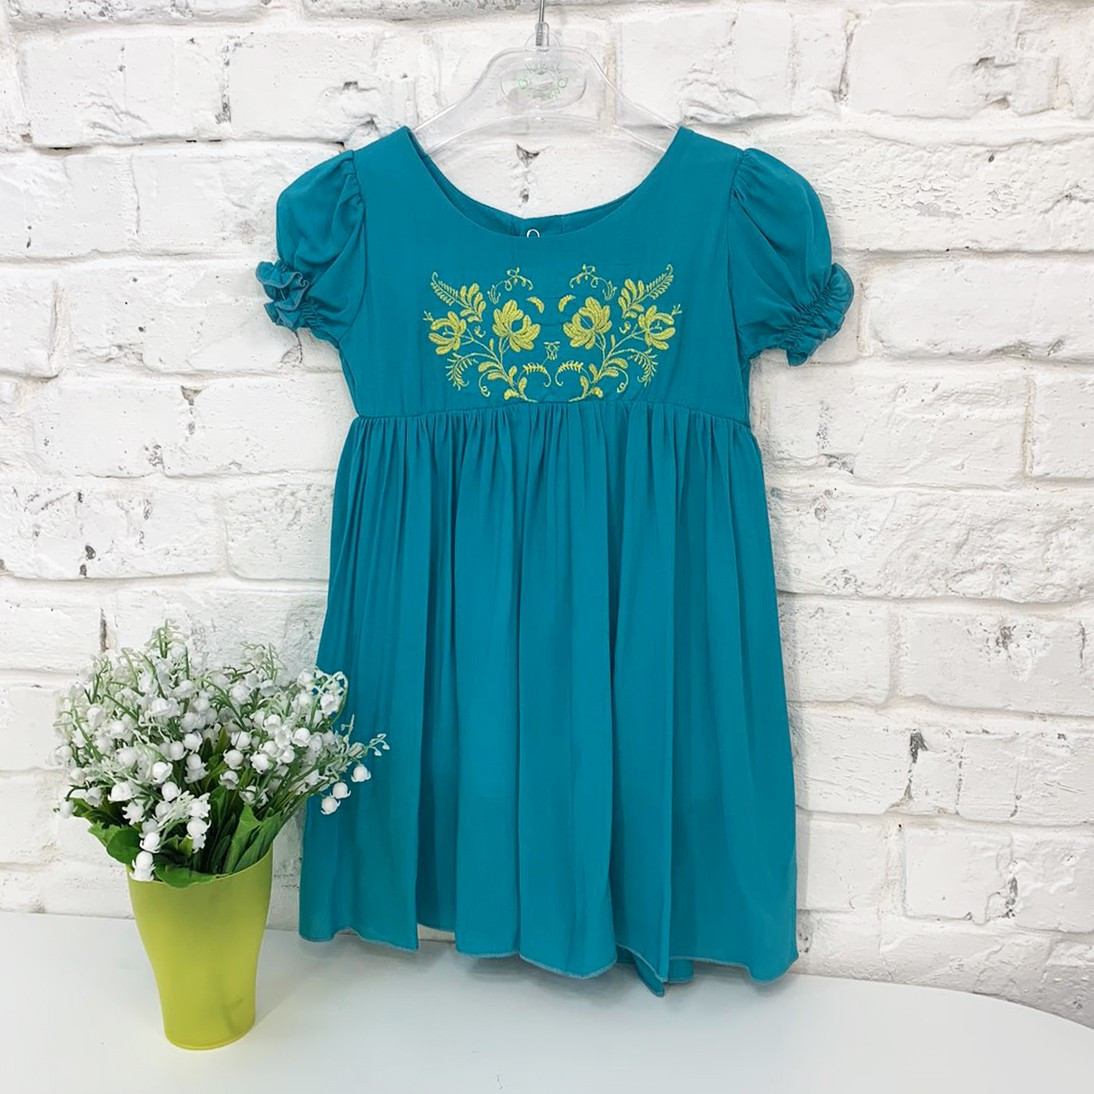 0264-1 платье бирюзовое на девочку 1-3 года (3 ед. размеры: 80.92.104)